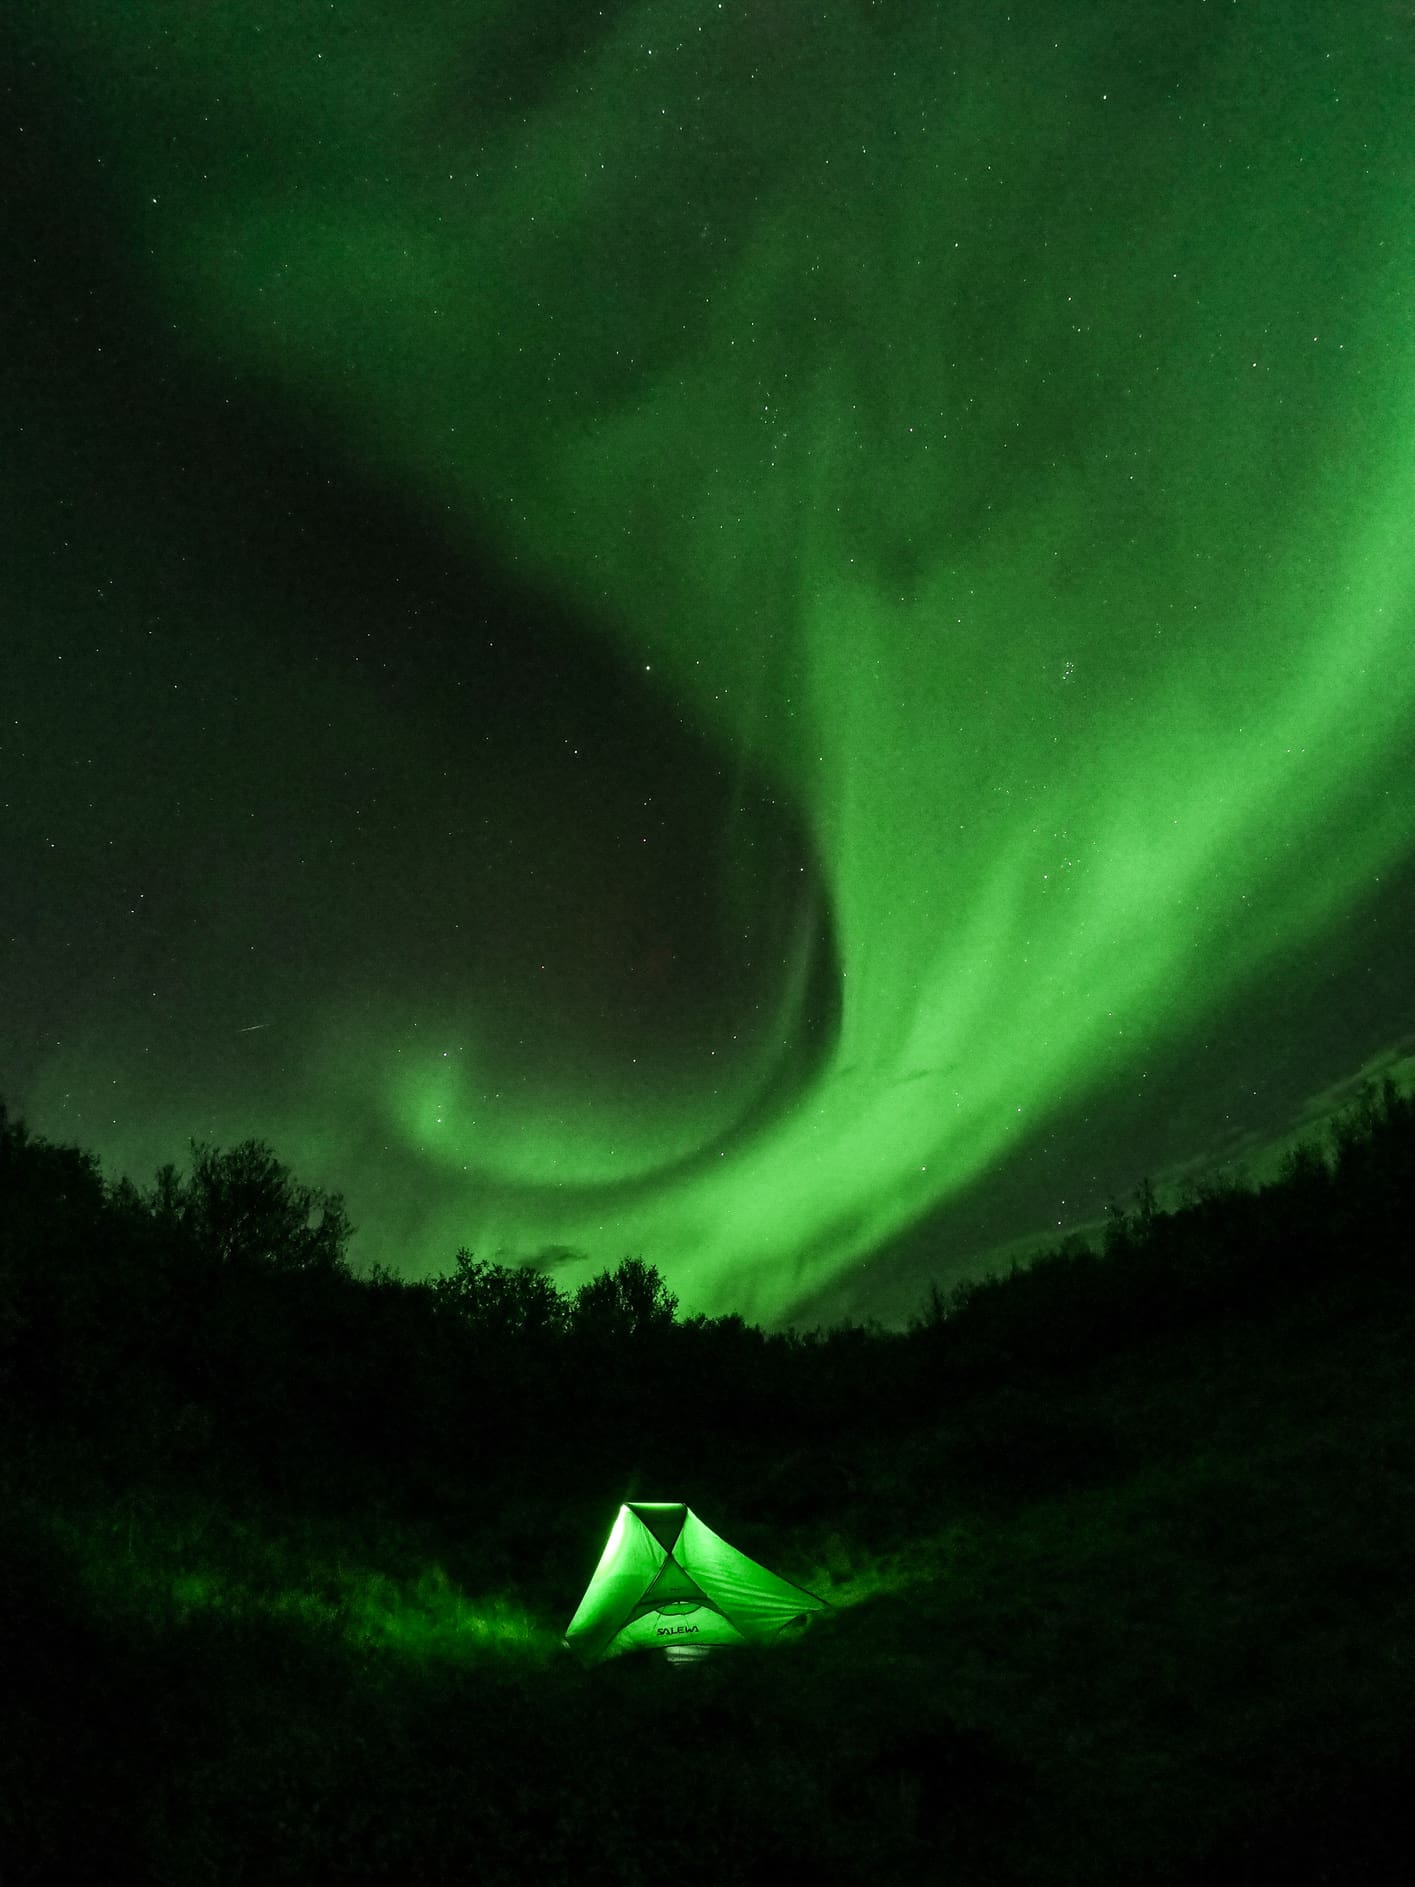 Mejor imagen de auroras boreales usando una GoPro